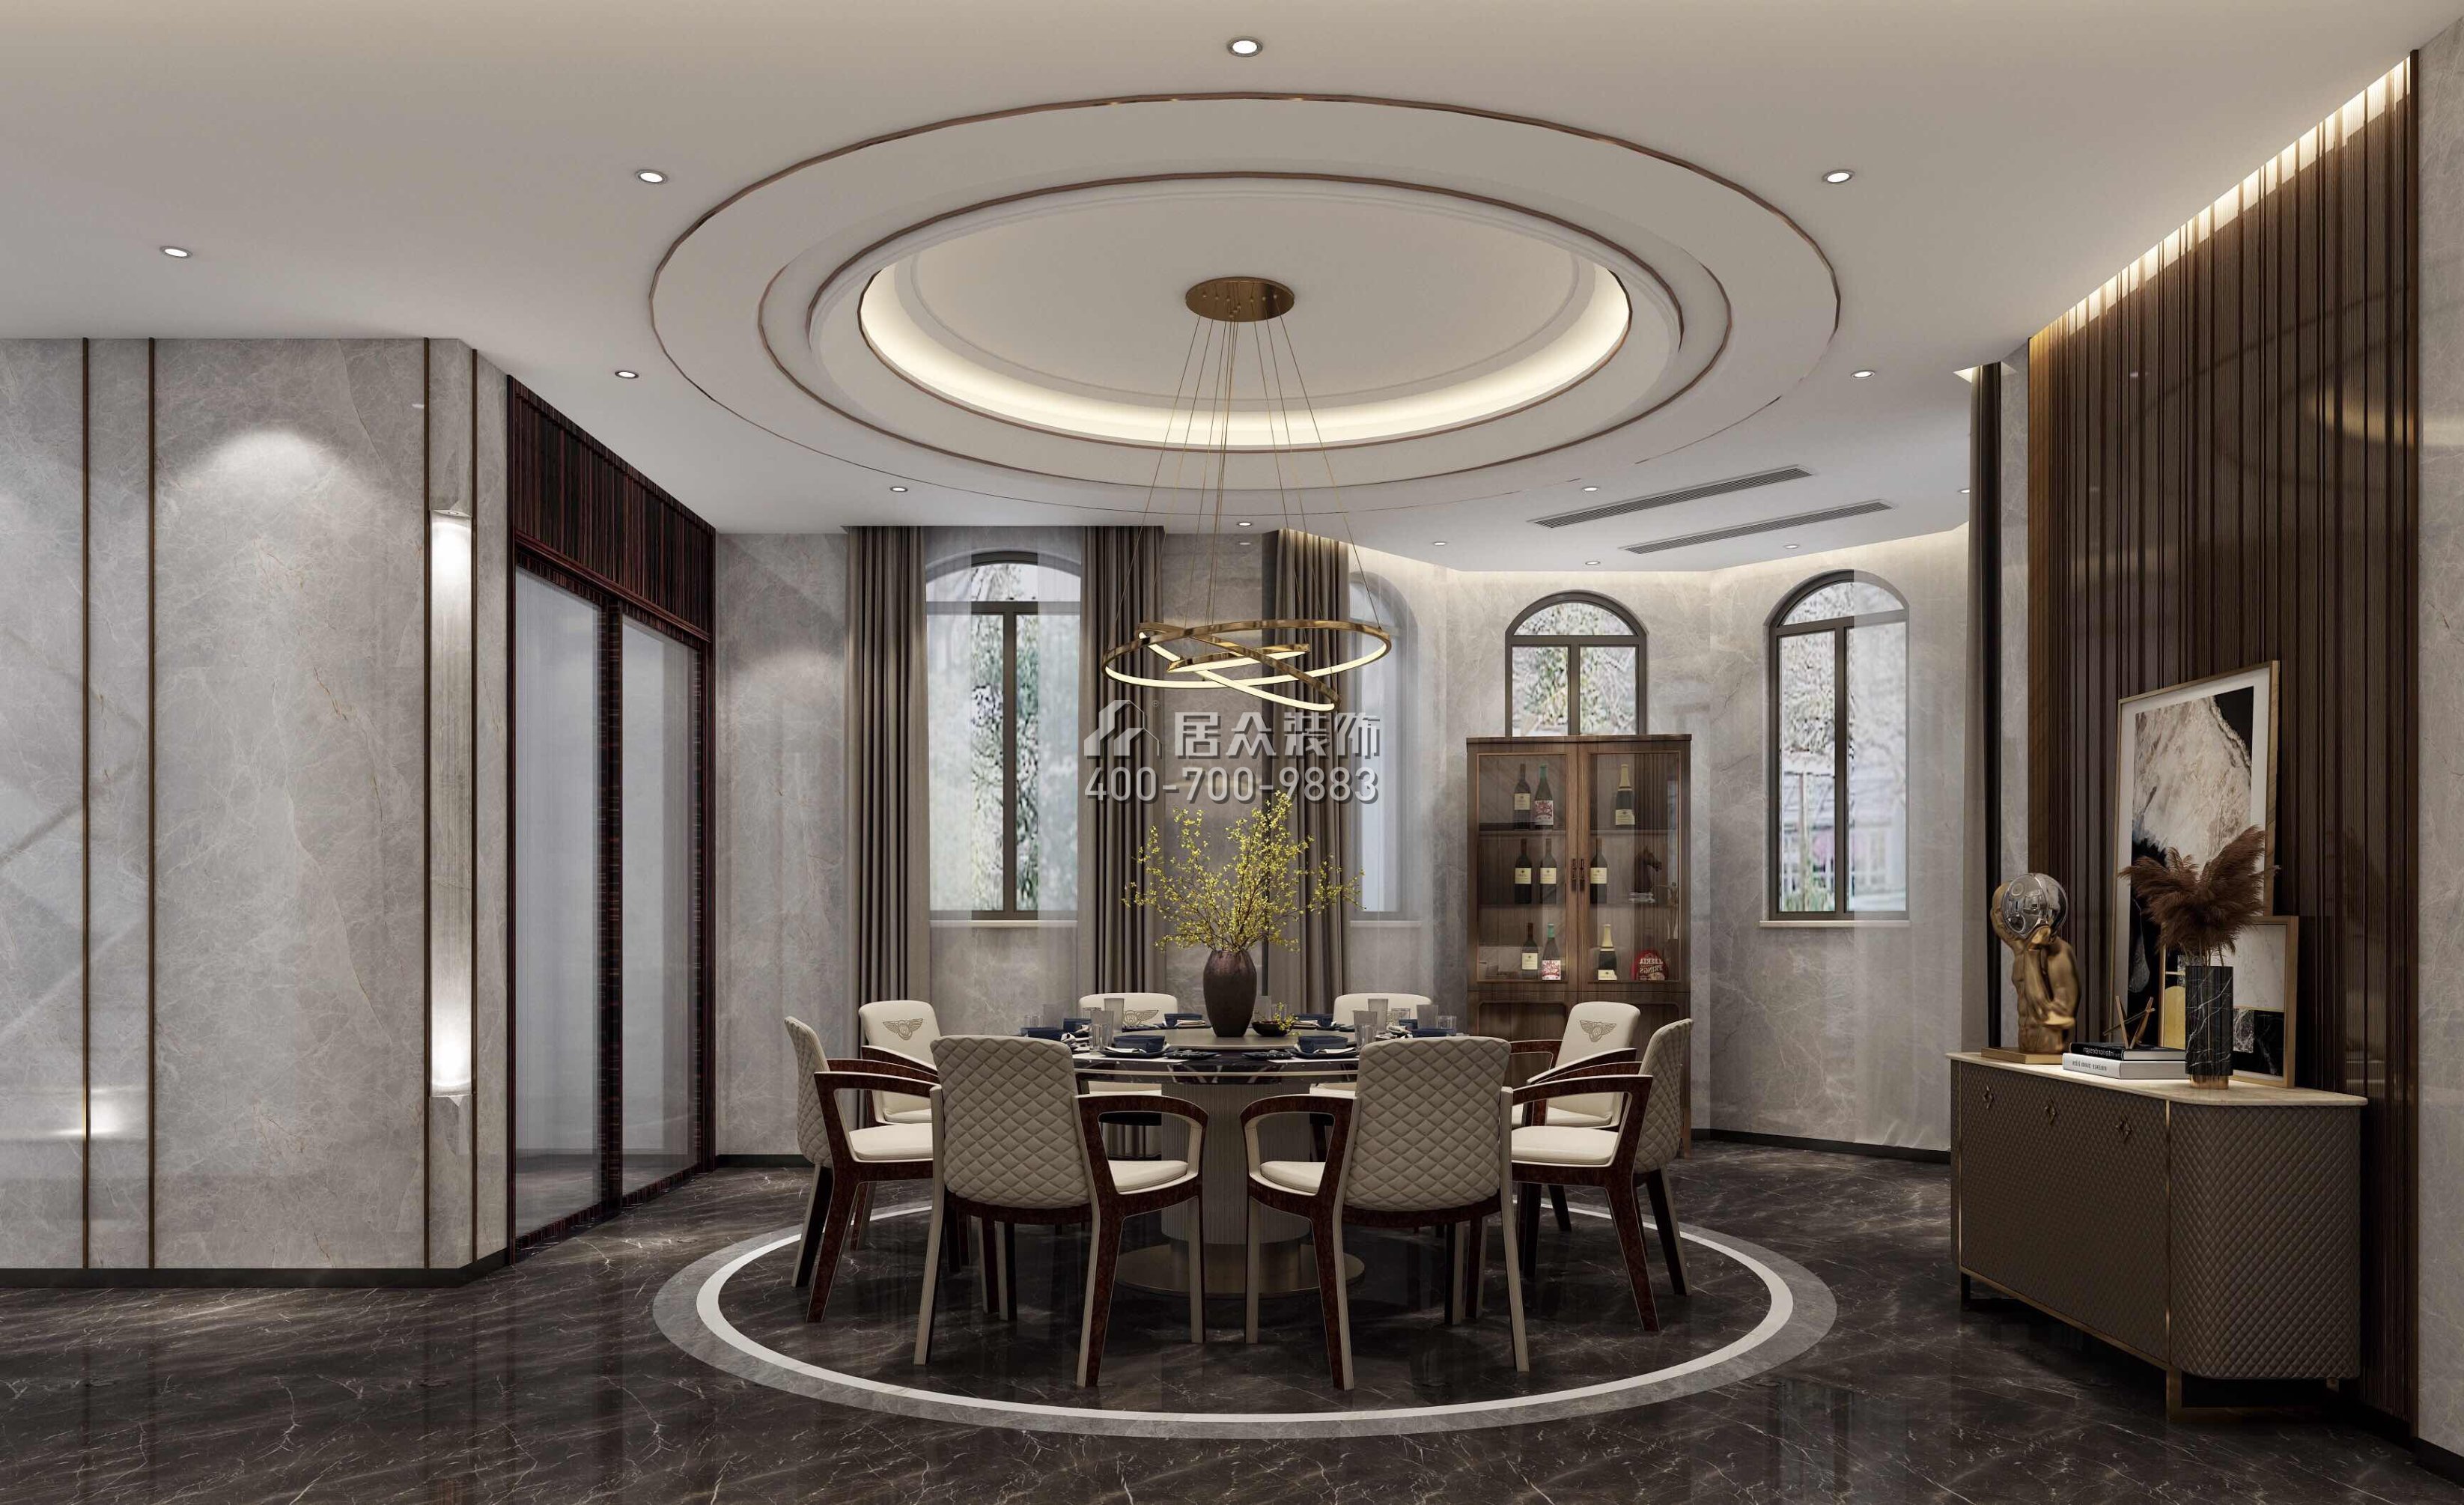 江畔豪庭800平方米现代简约风格别墅户型餐厅装修效果图